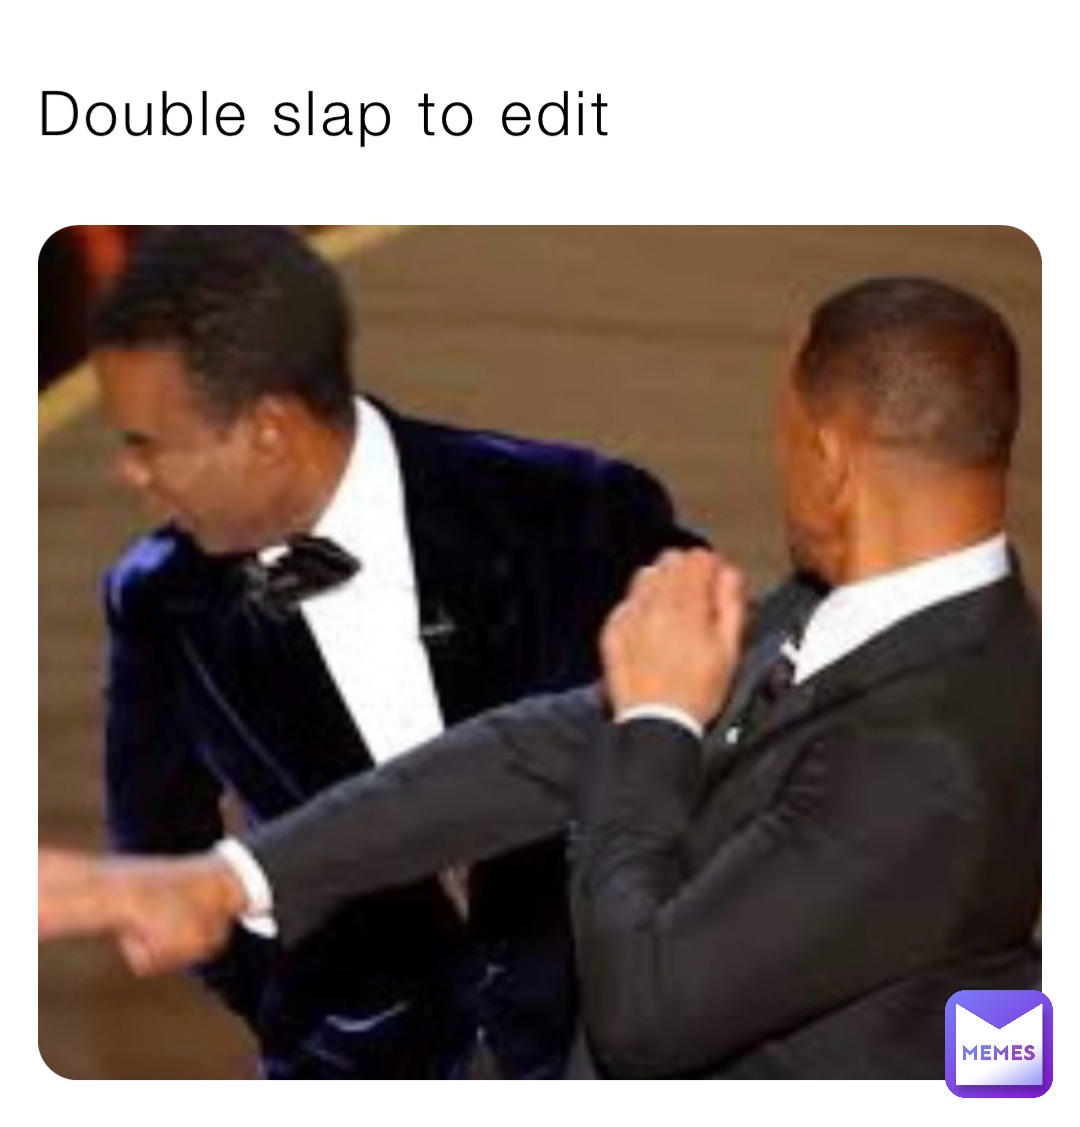 Double slap to edit